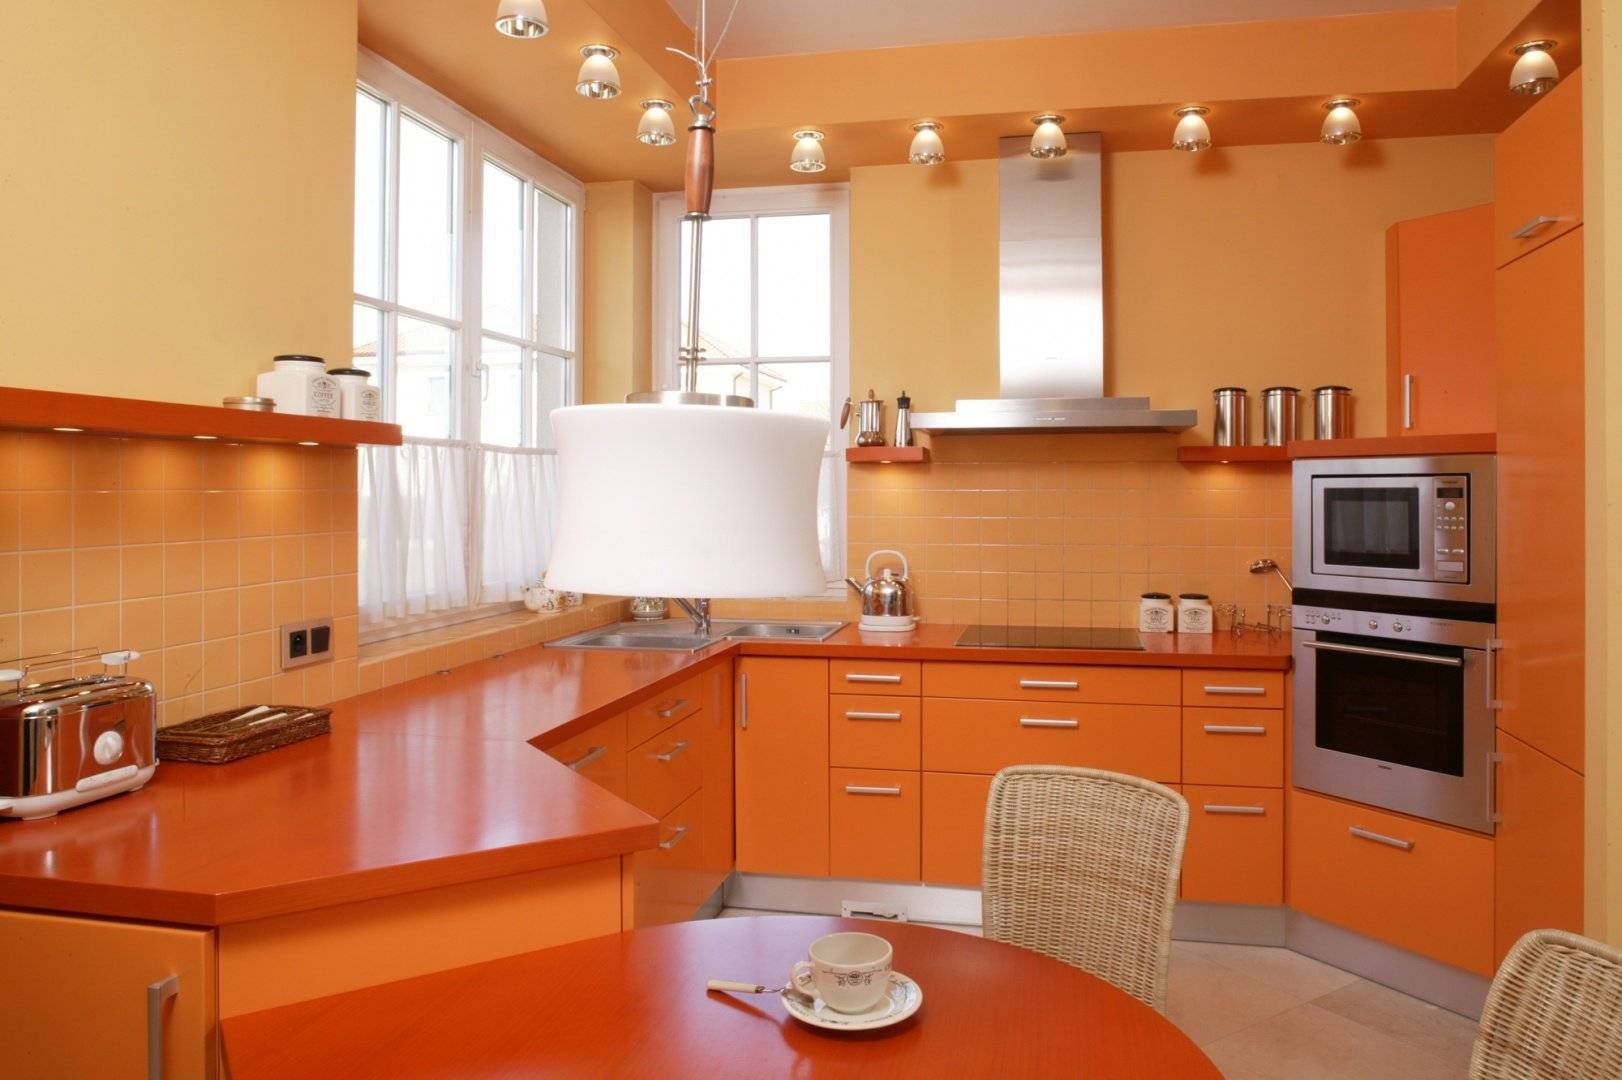 Дизайн кухни оранжевого цвета — апельсиновый стильный интерьер